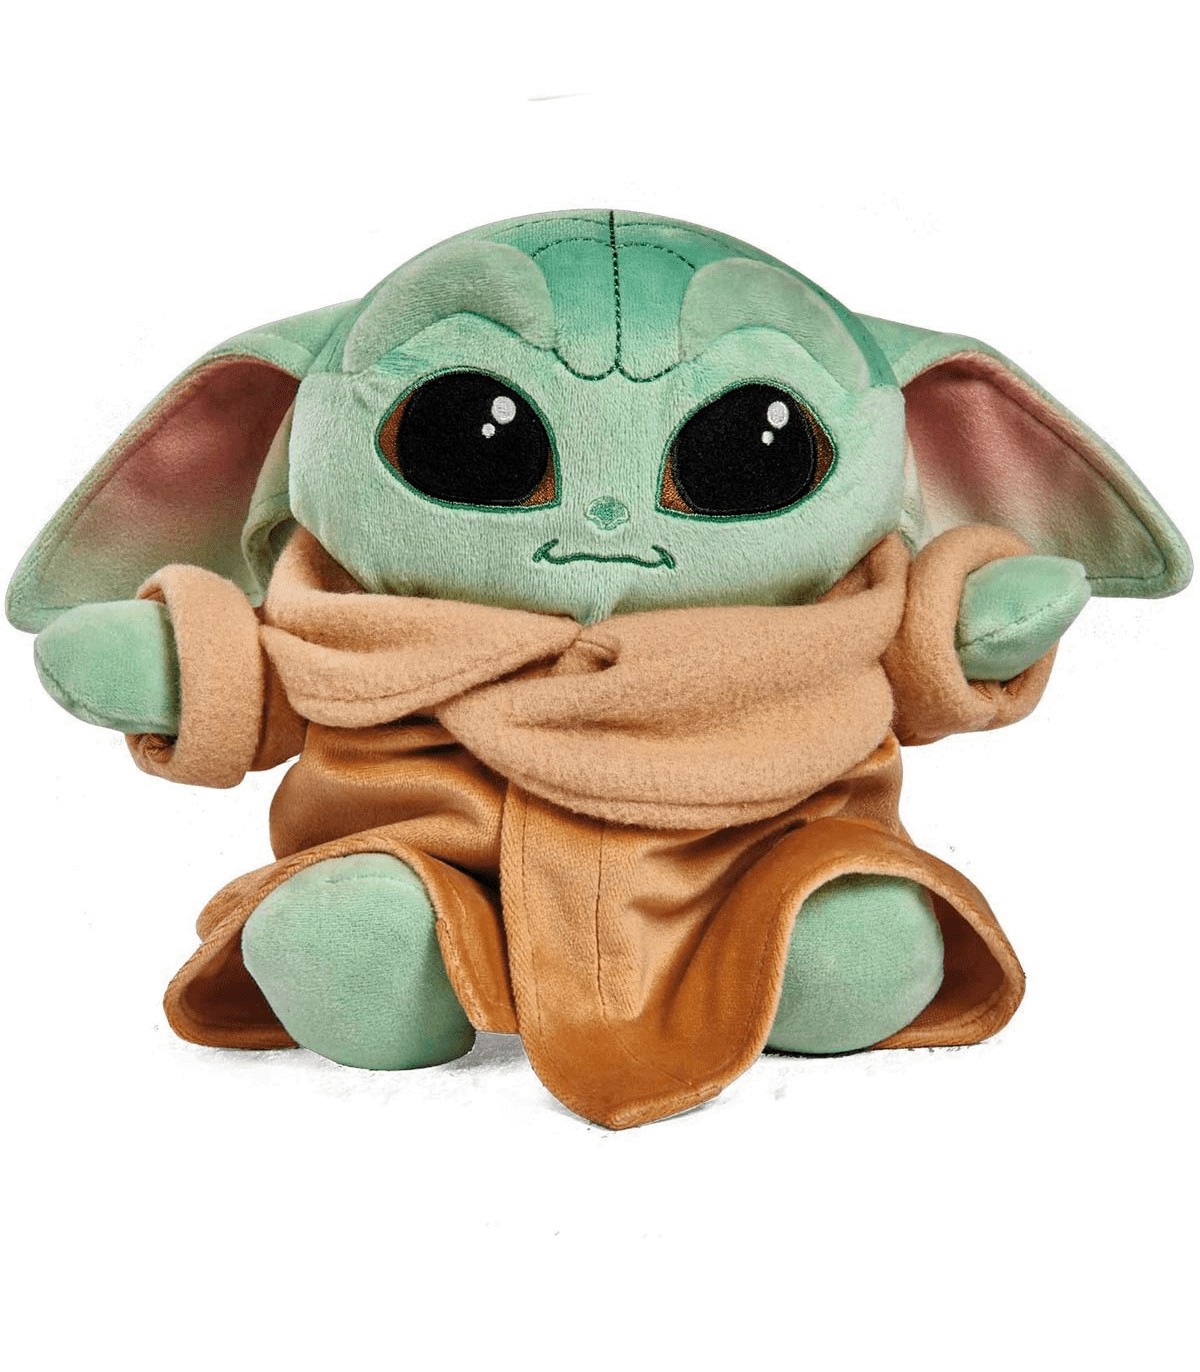 Peluche Disney 100 Años Petit Baby Yoda a precio de socio